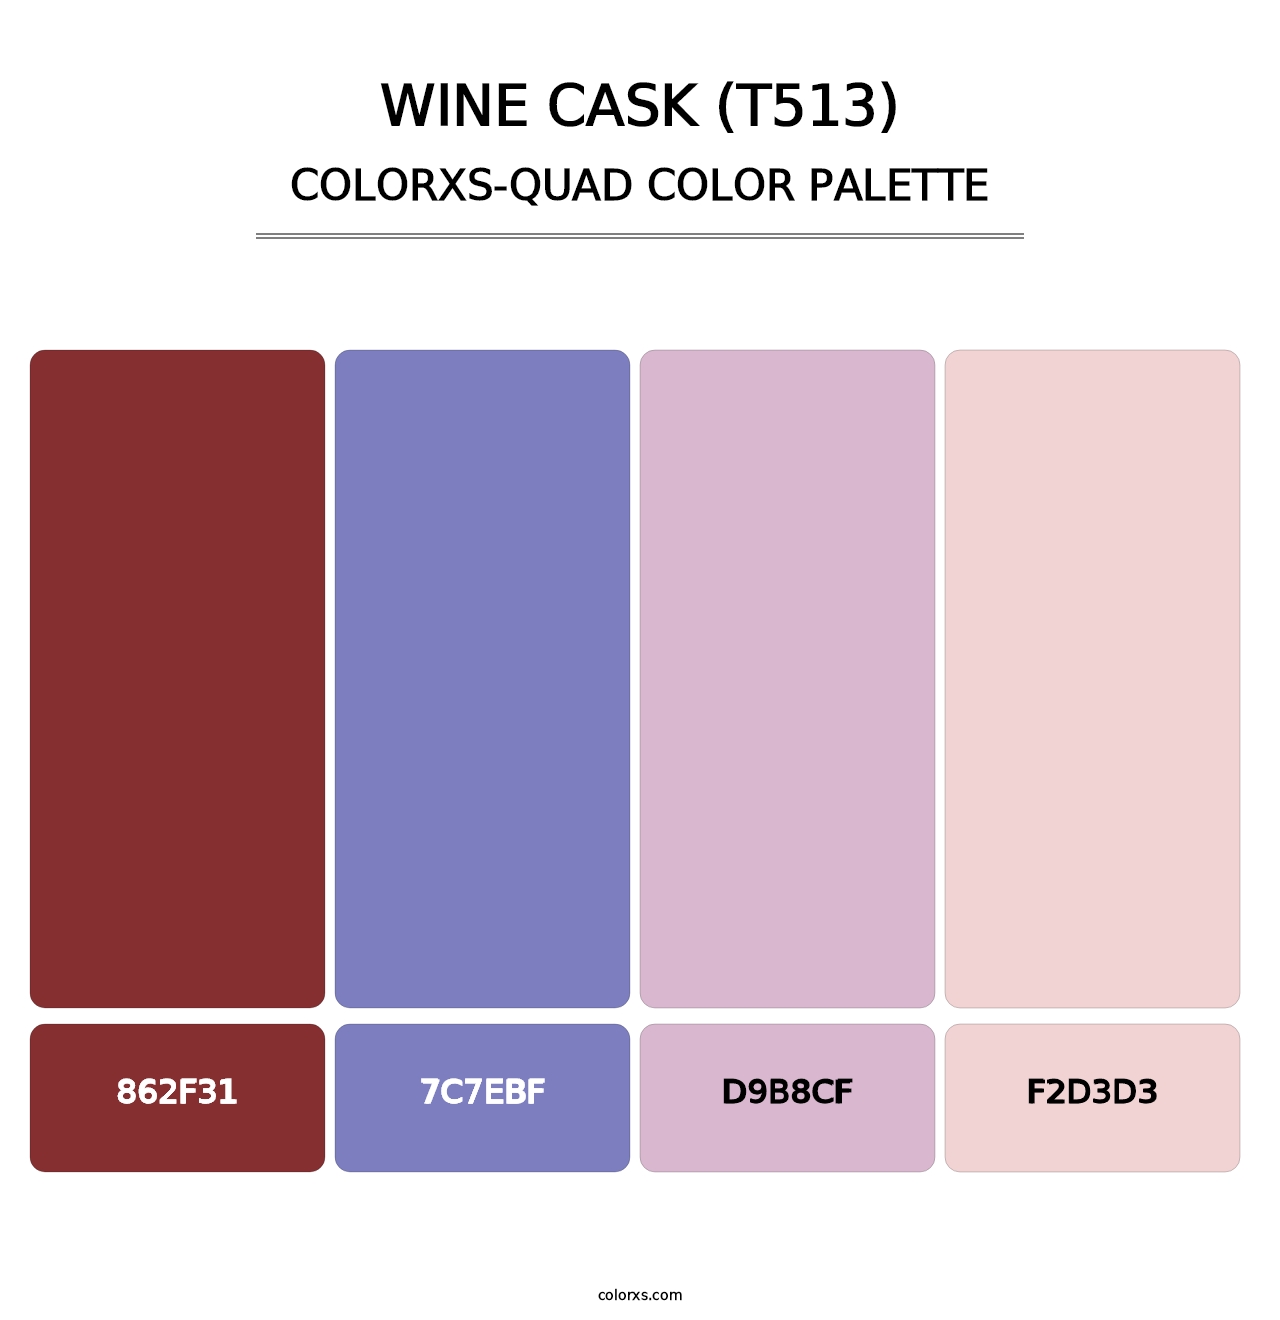 Wine Cask (T513) - Colorxs Quad Palette